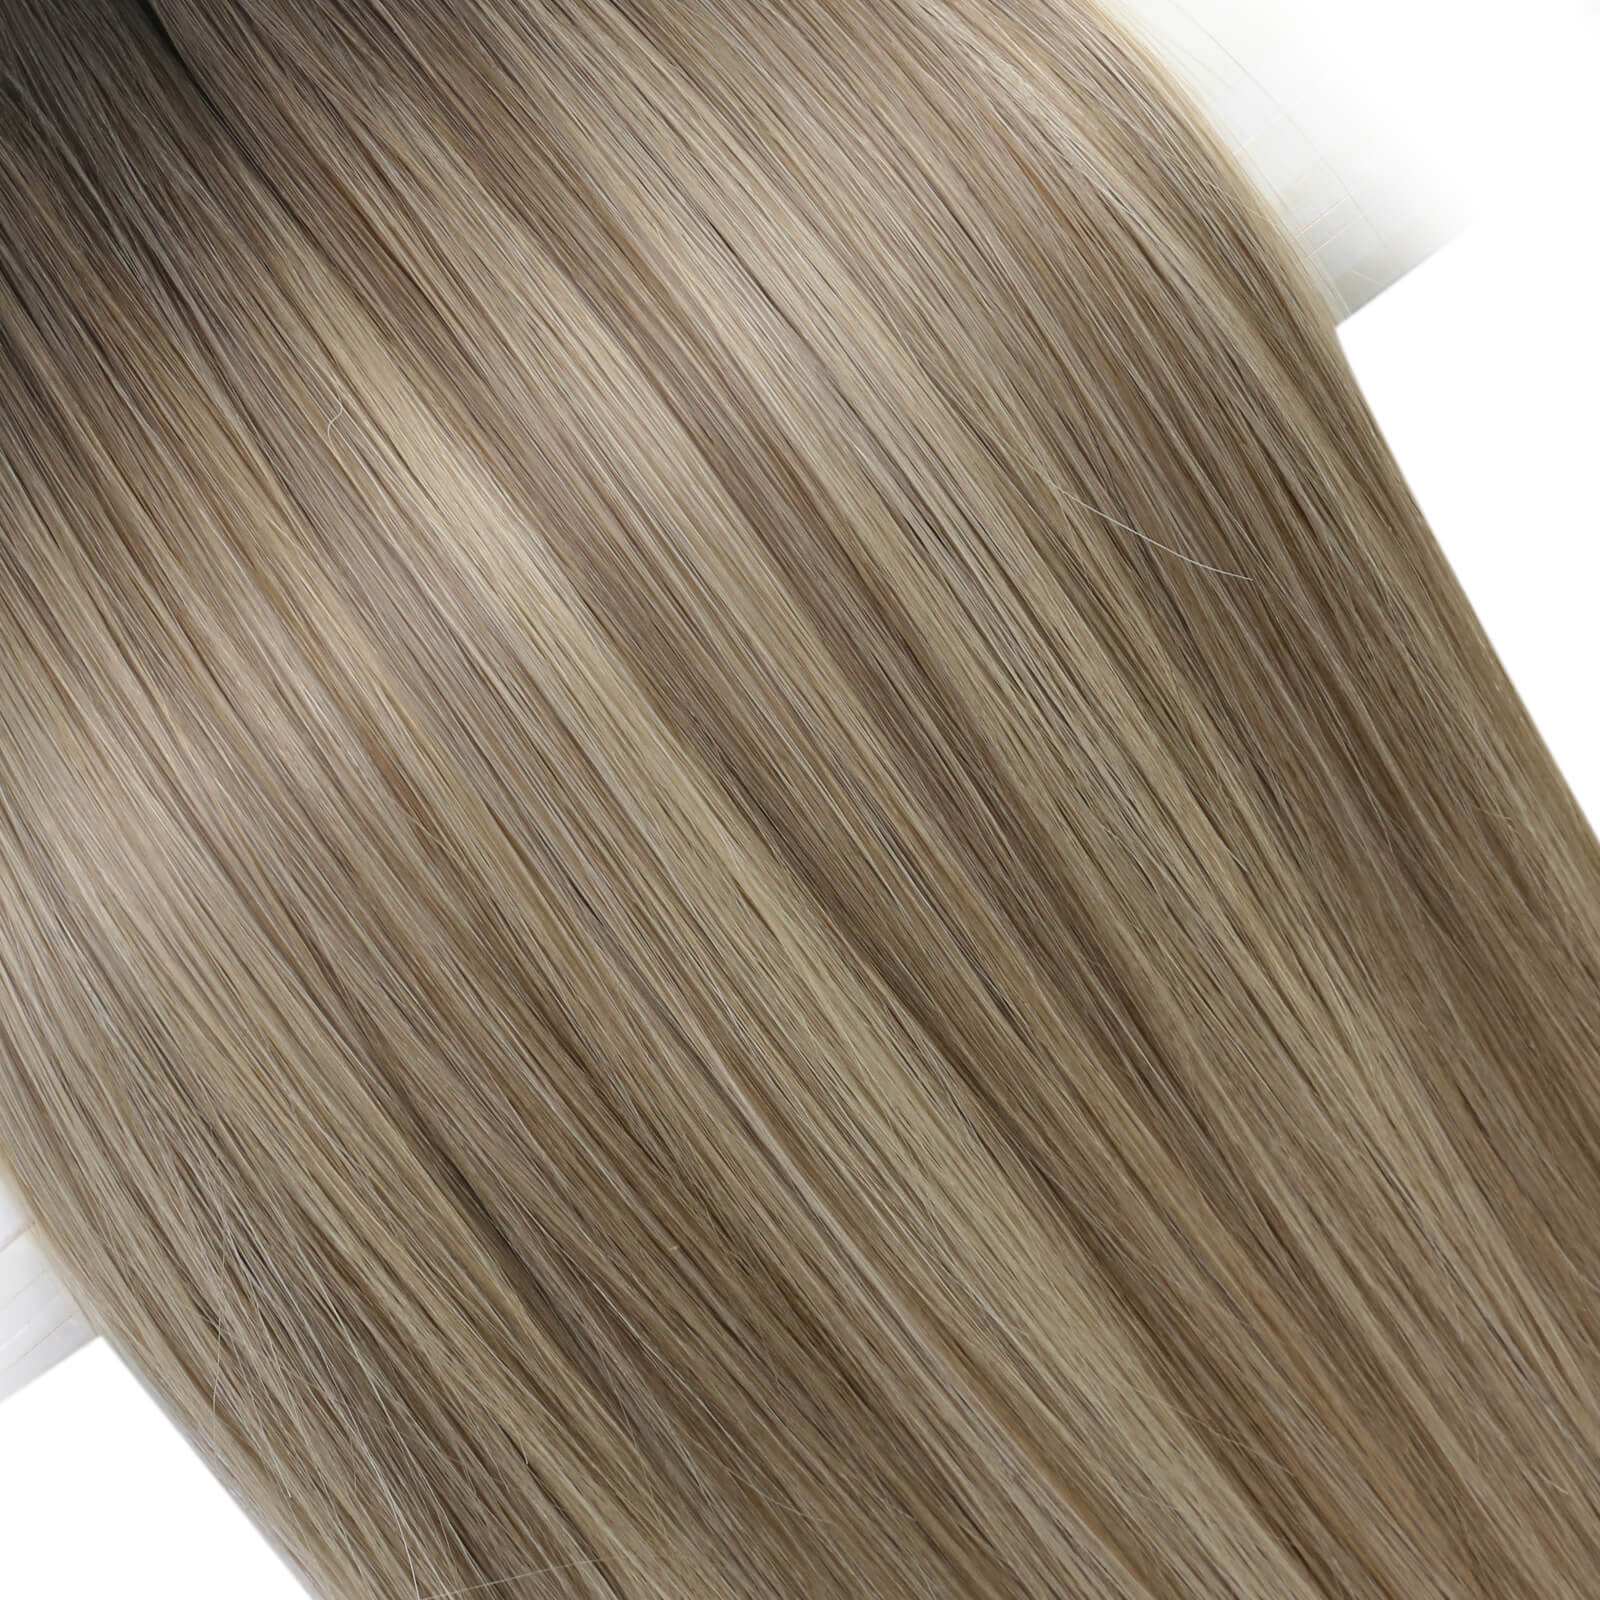 [virgin+]Genius Weft Hair Extensions virgin+ Hair Bundles Human Straight Weave Brown Blonde#5/7/20